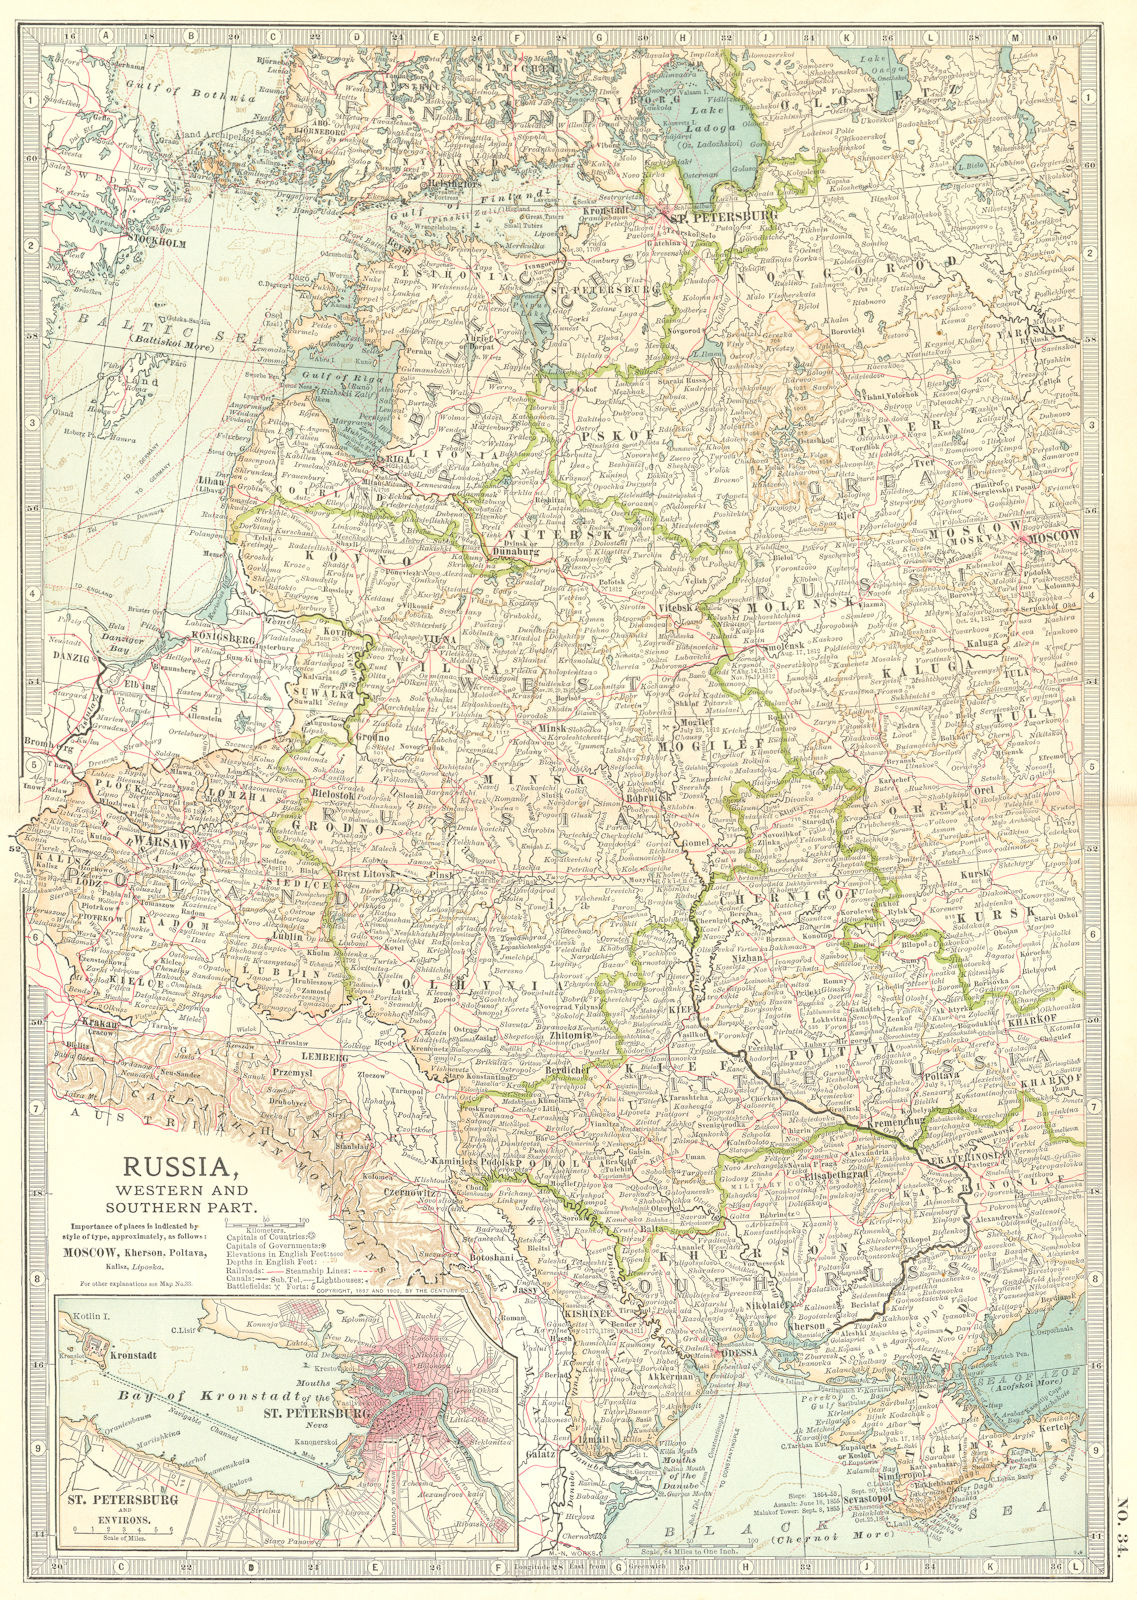 Associate Product E EUROPE.Russia Ukraine Poland Baltics St Petersburg. w/ battlefields 1903 map